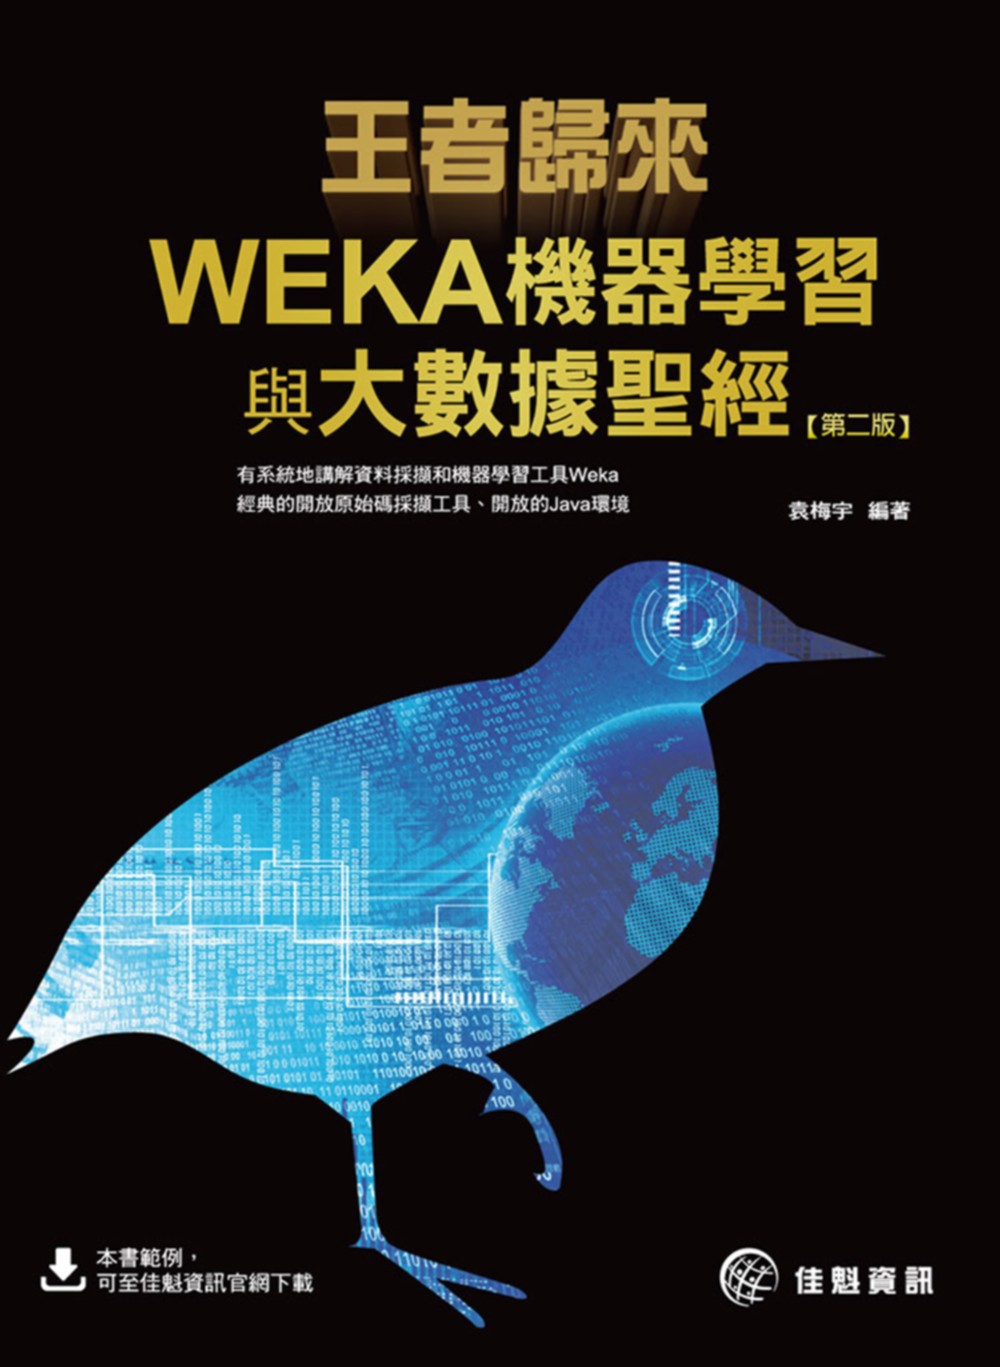 王者歸來：WEKA機器學習與大數據聖經(第2版)